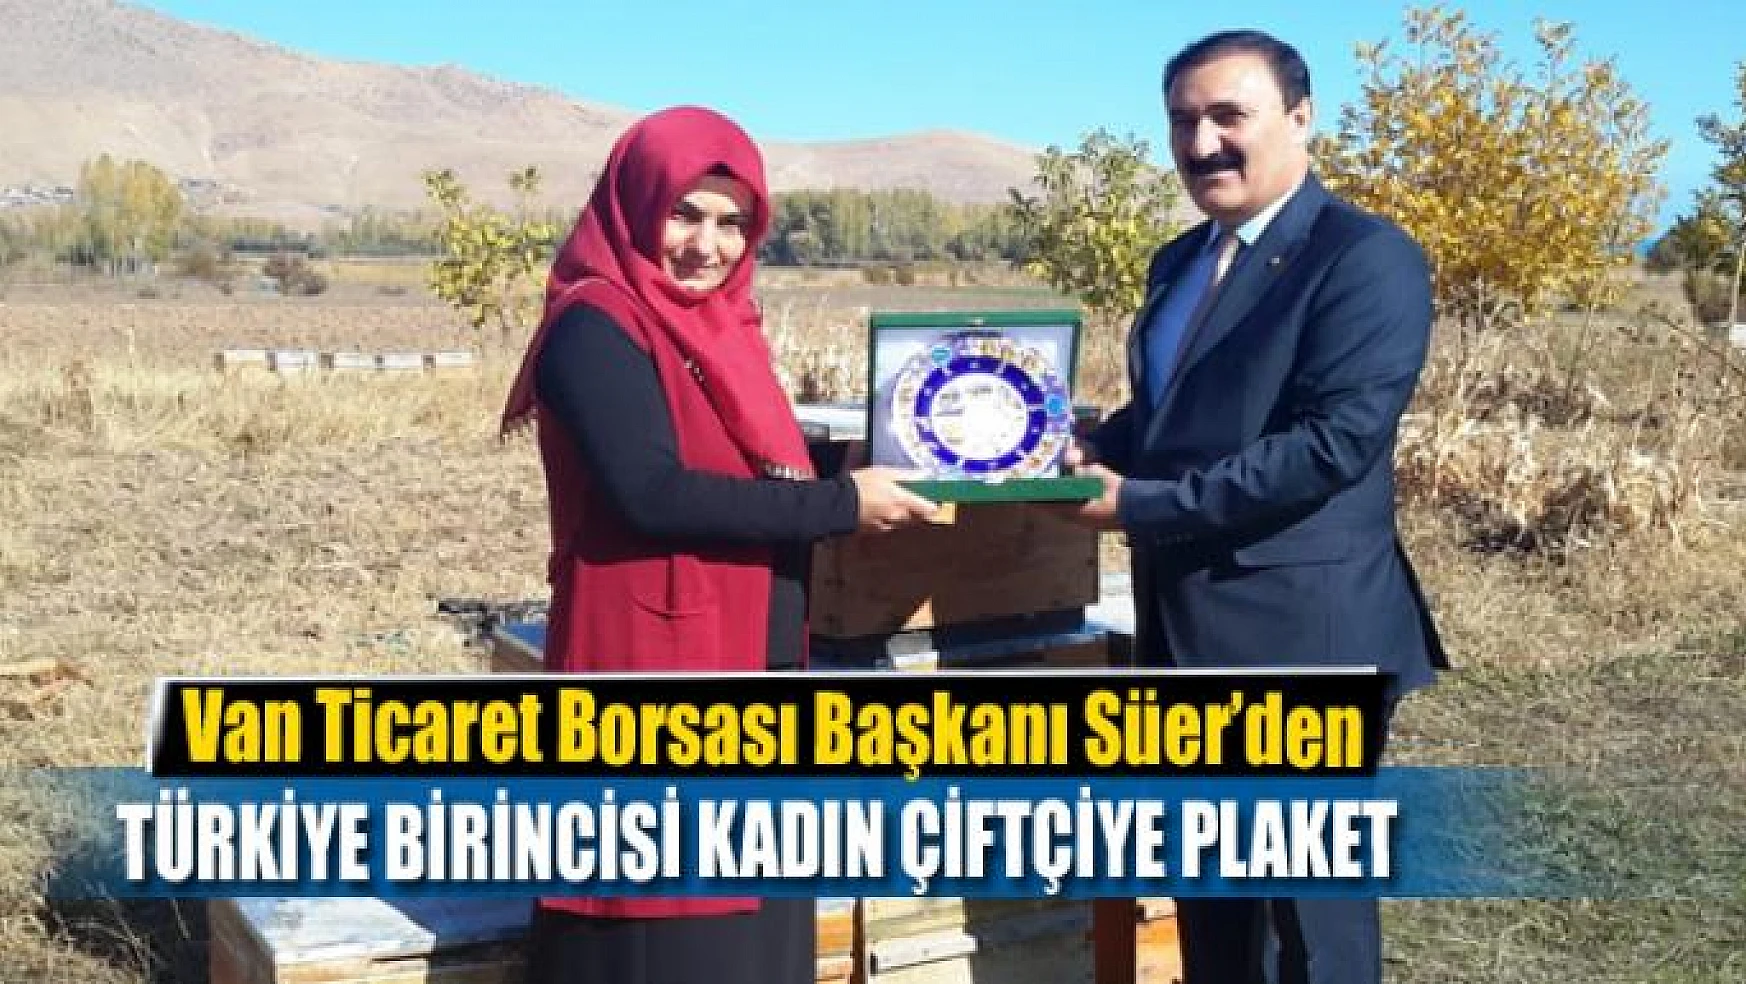 Başkan Süer'den Türkiye birincisi kadın çiftçiye plaket